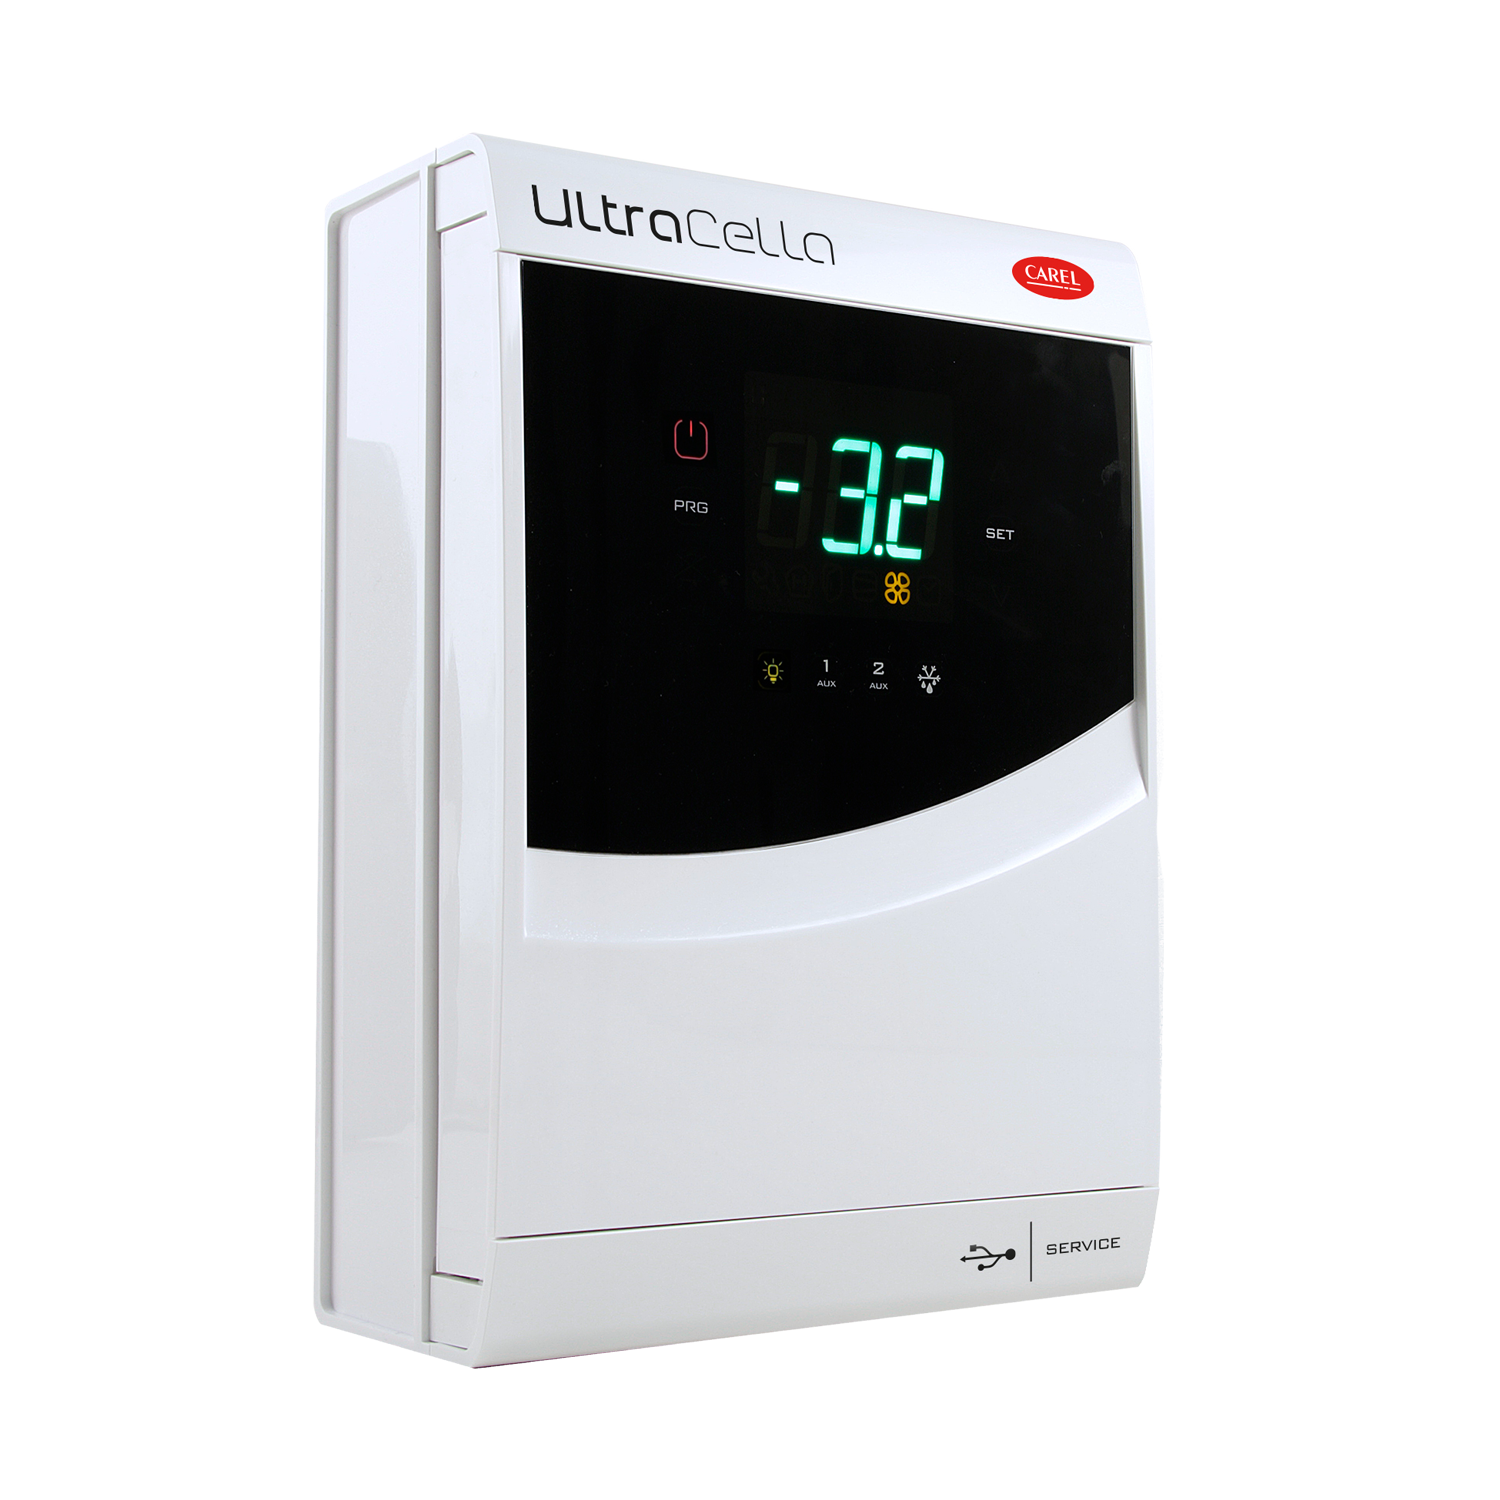 UltraCella Kühlanlagensteuerung 230V einzeiliges Display